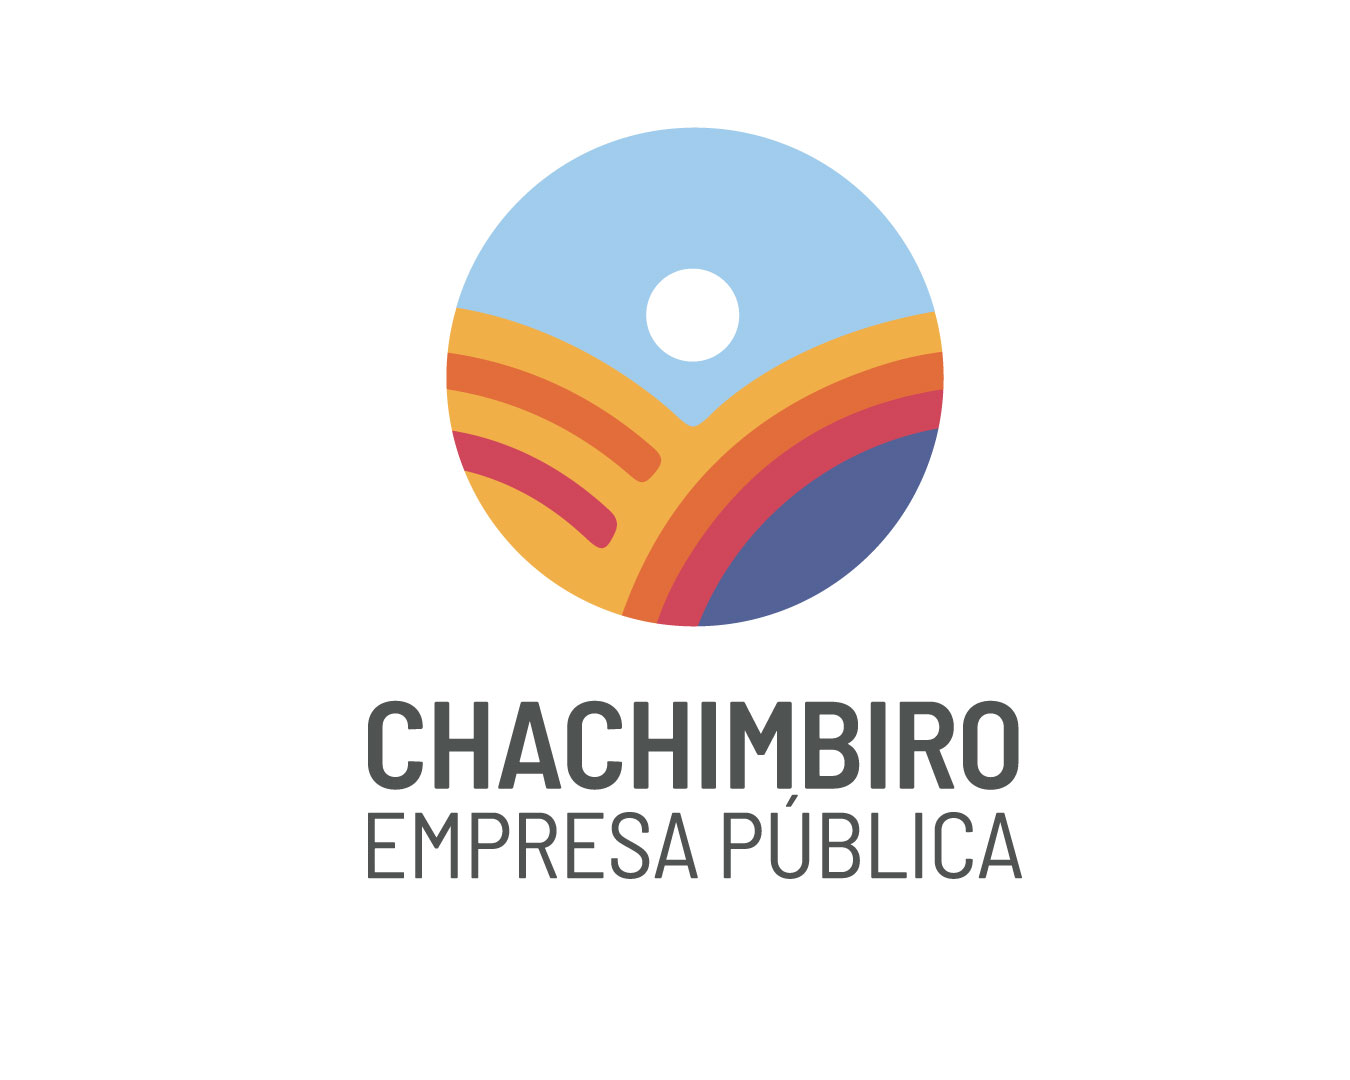 Chachimbiro